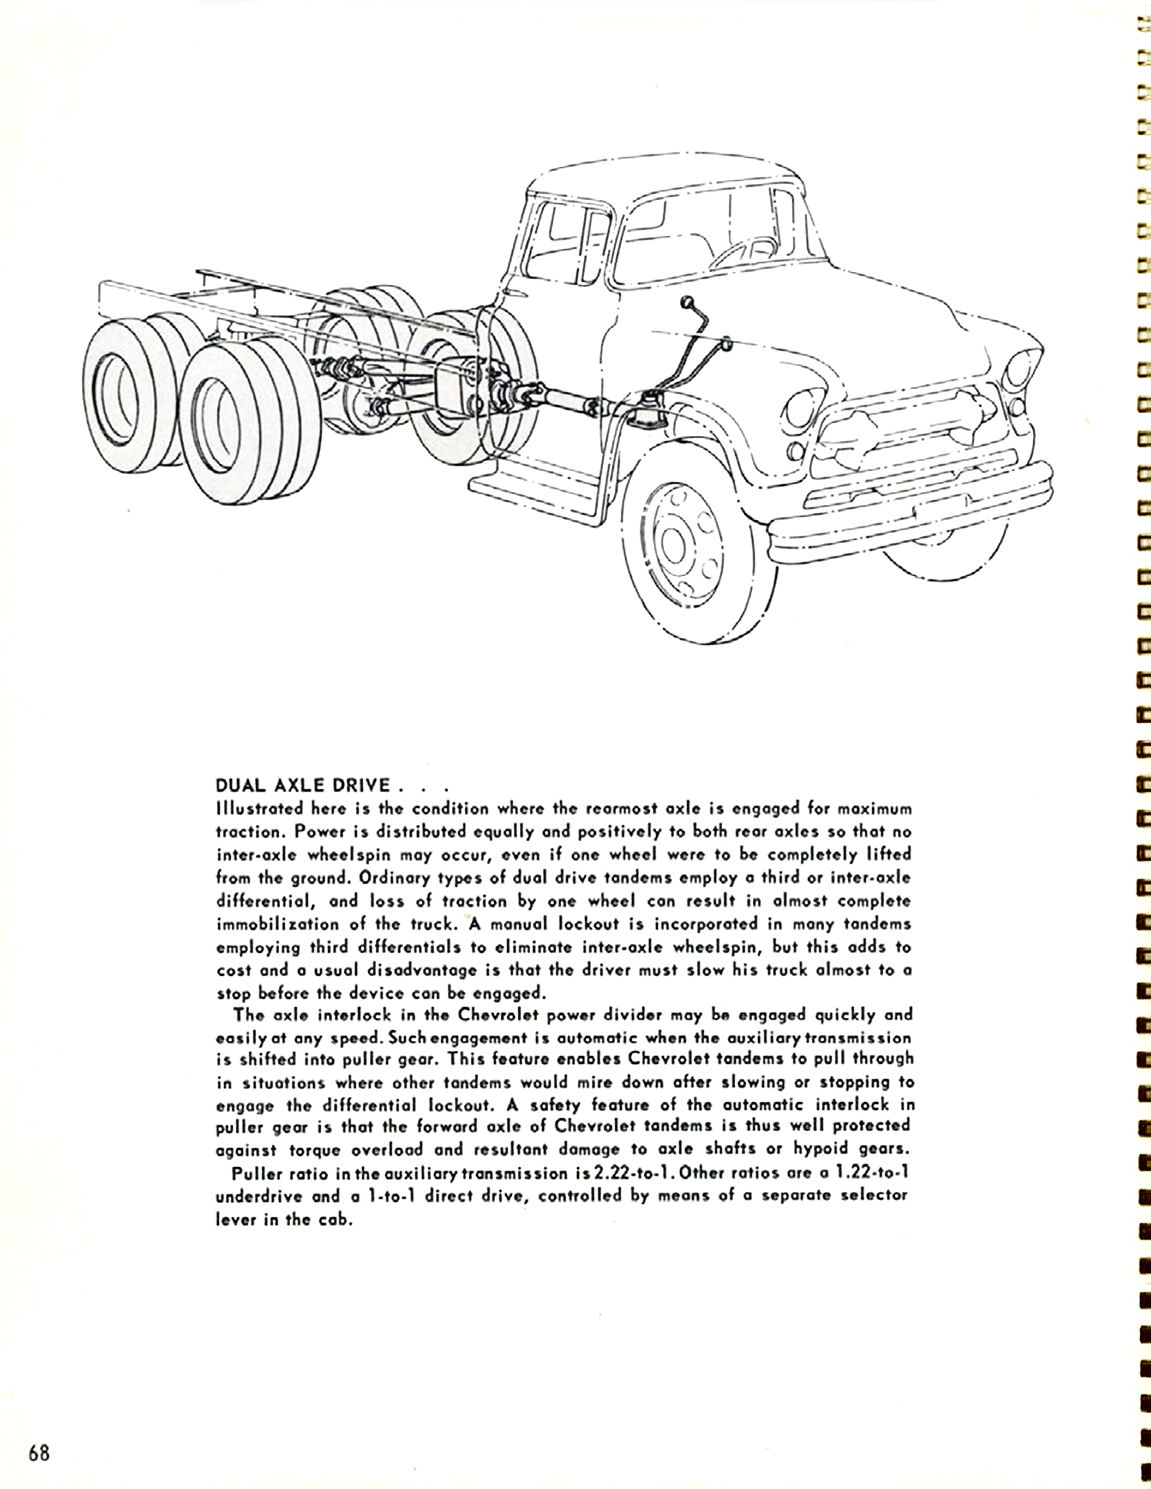 1956_Chevrolet_Truck_Engineering_Features-68